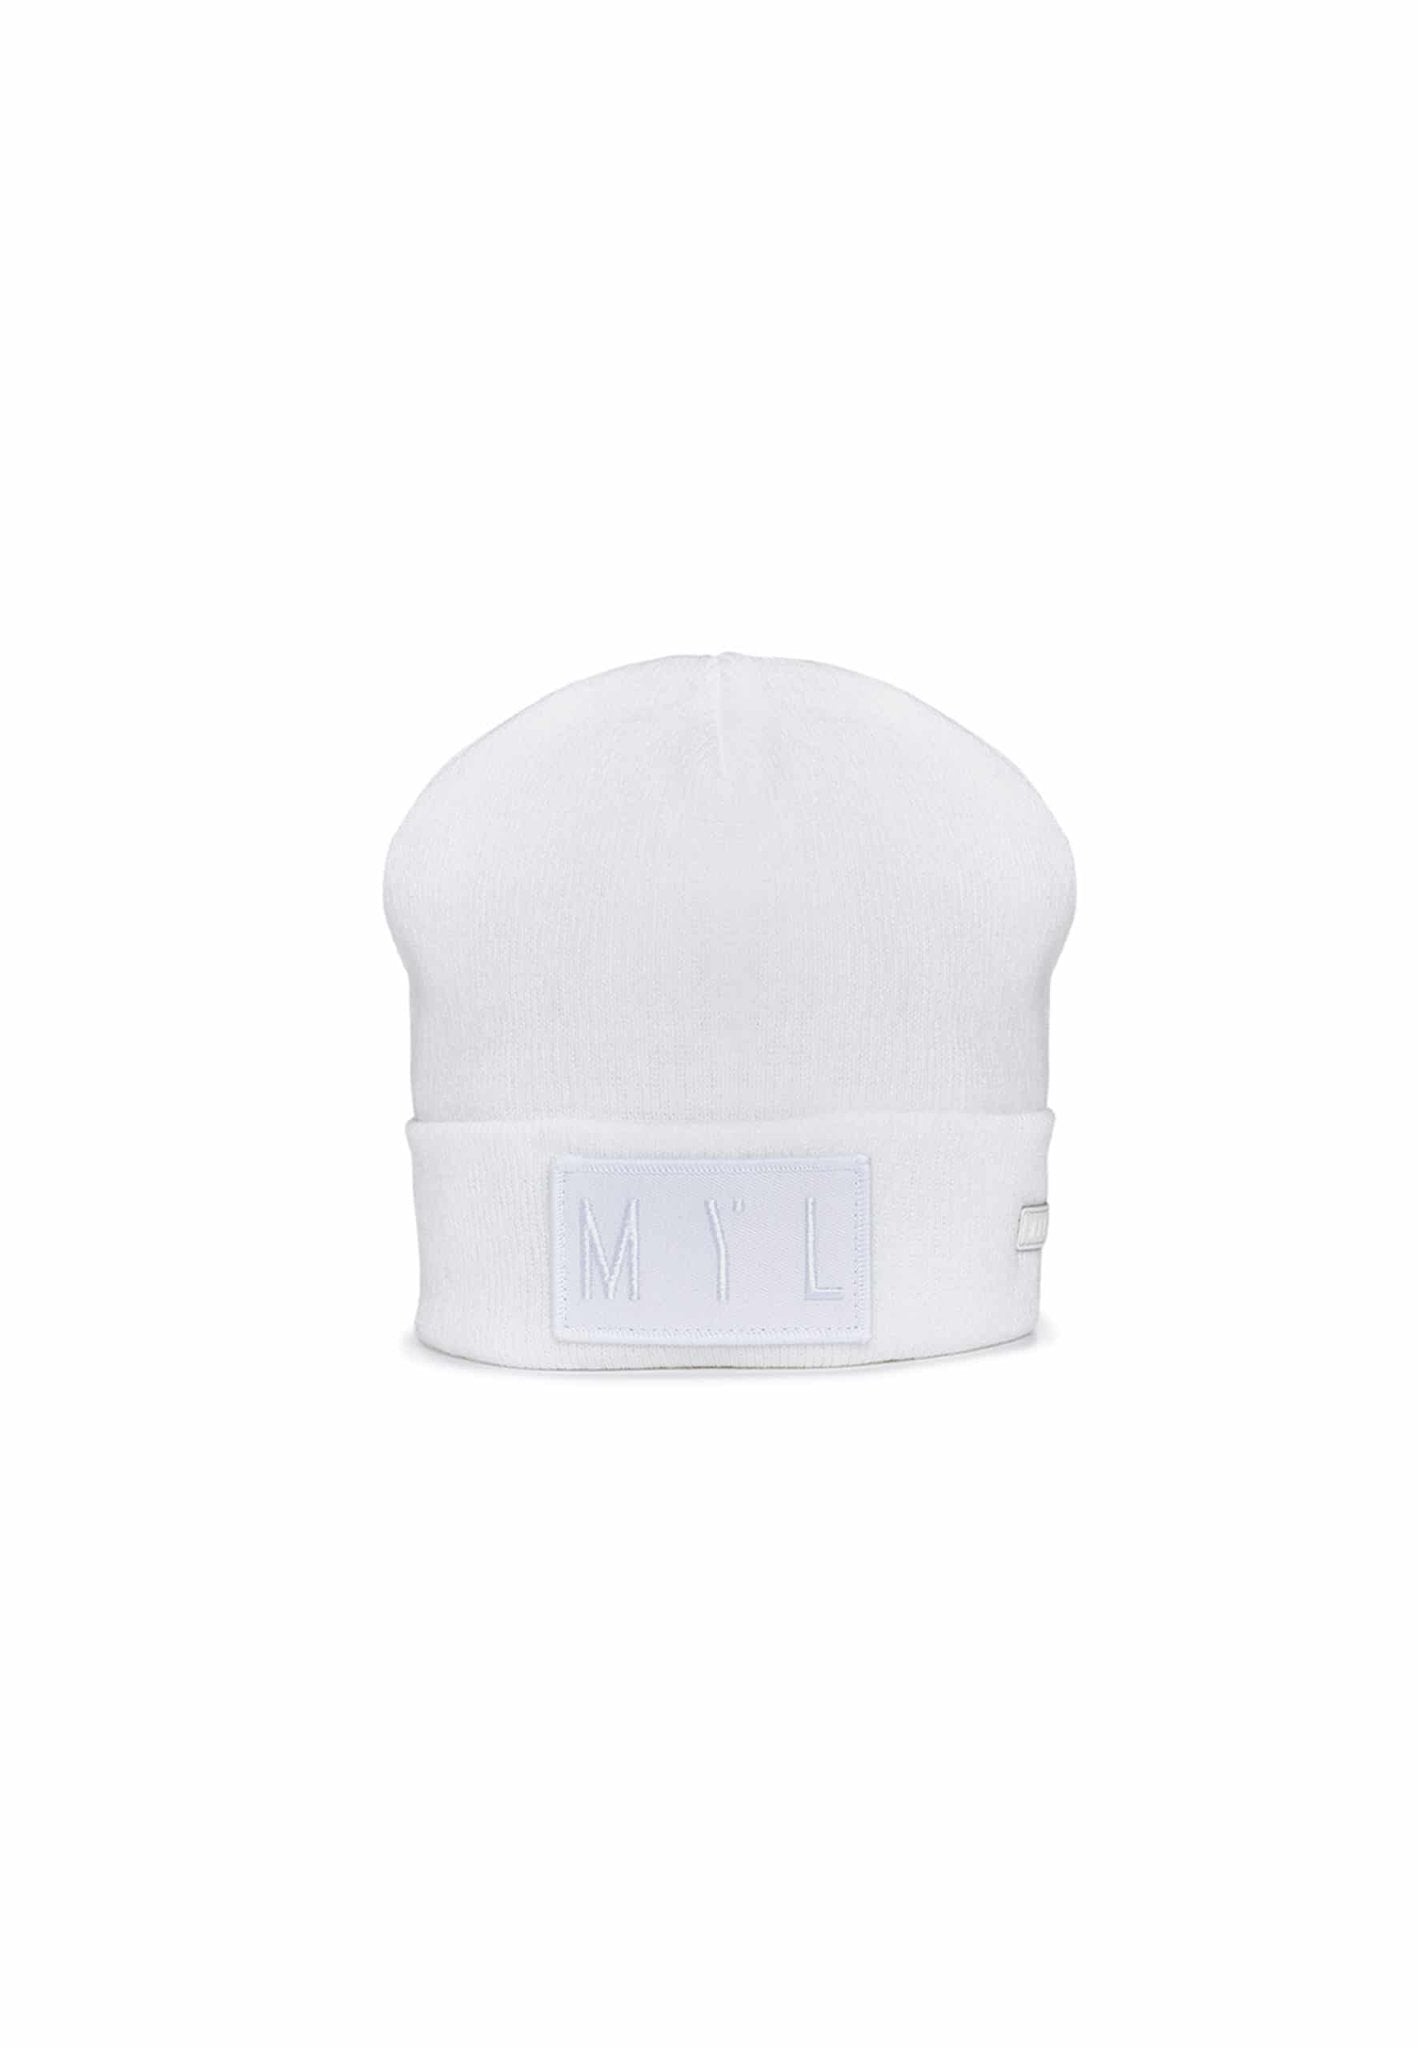 Beanie hat with logo pocket - MYL BERLIN - 4260654110517 - 4260654110517